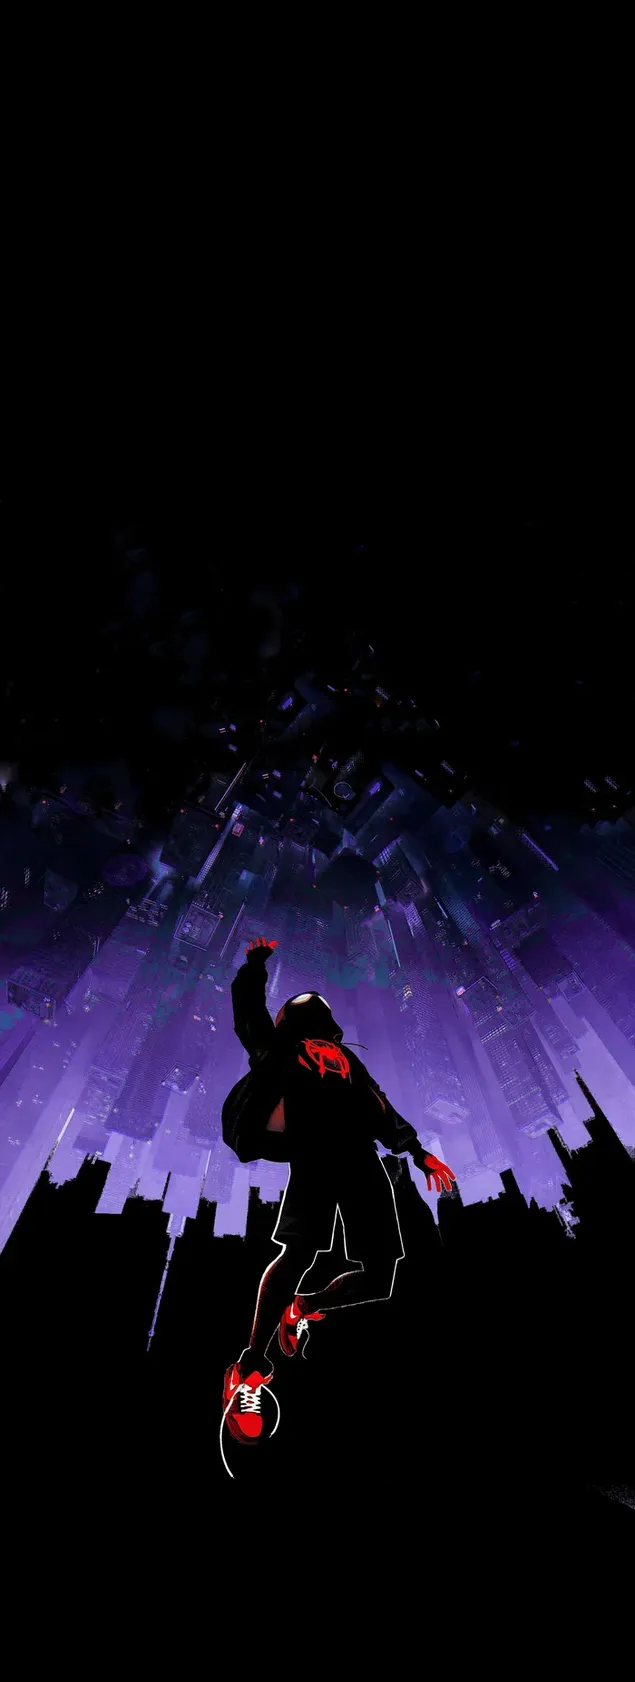 Superhéroe Spiderman haciendo negocios con luz roja brillante con luz púrpura